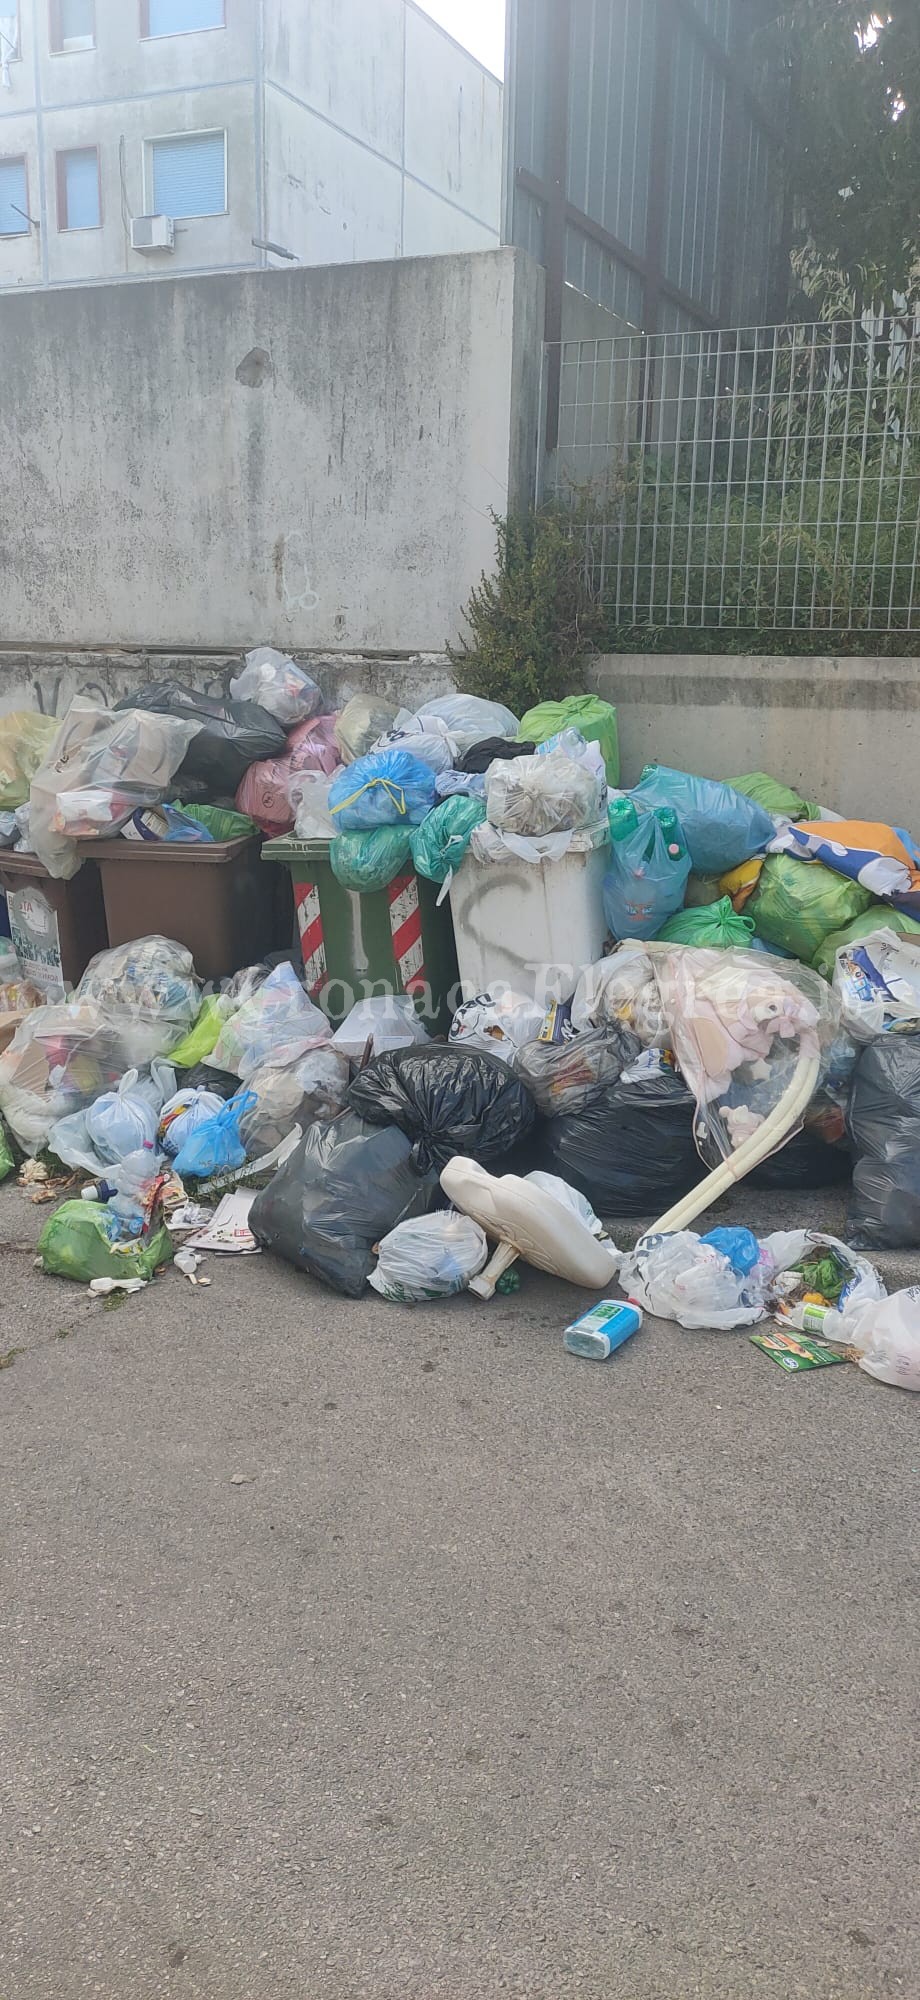 Cumuli di rifiuti nei 600 alloggi, l’sos di un residente: «Puzza insopportabile con il caldo»